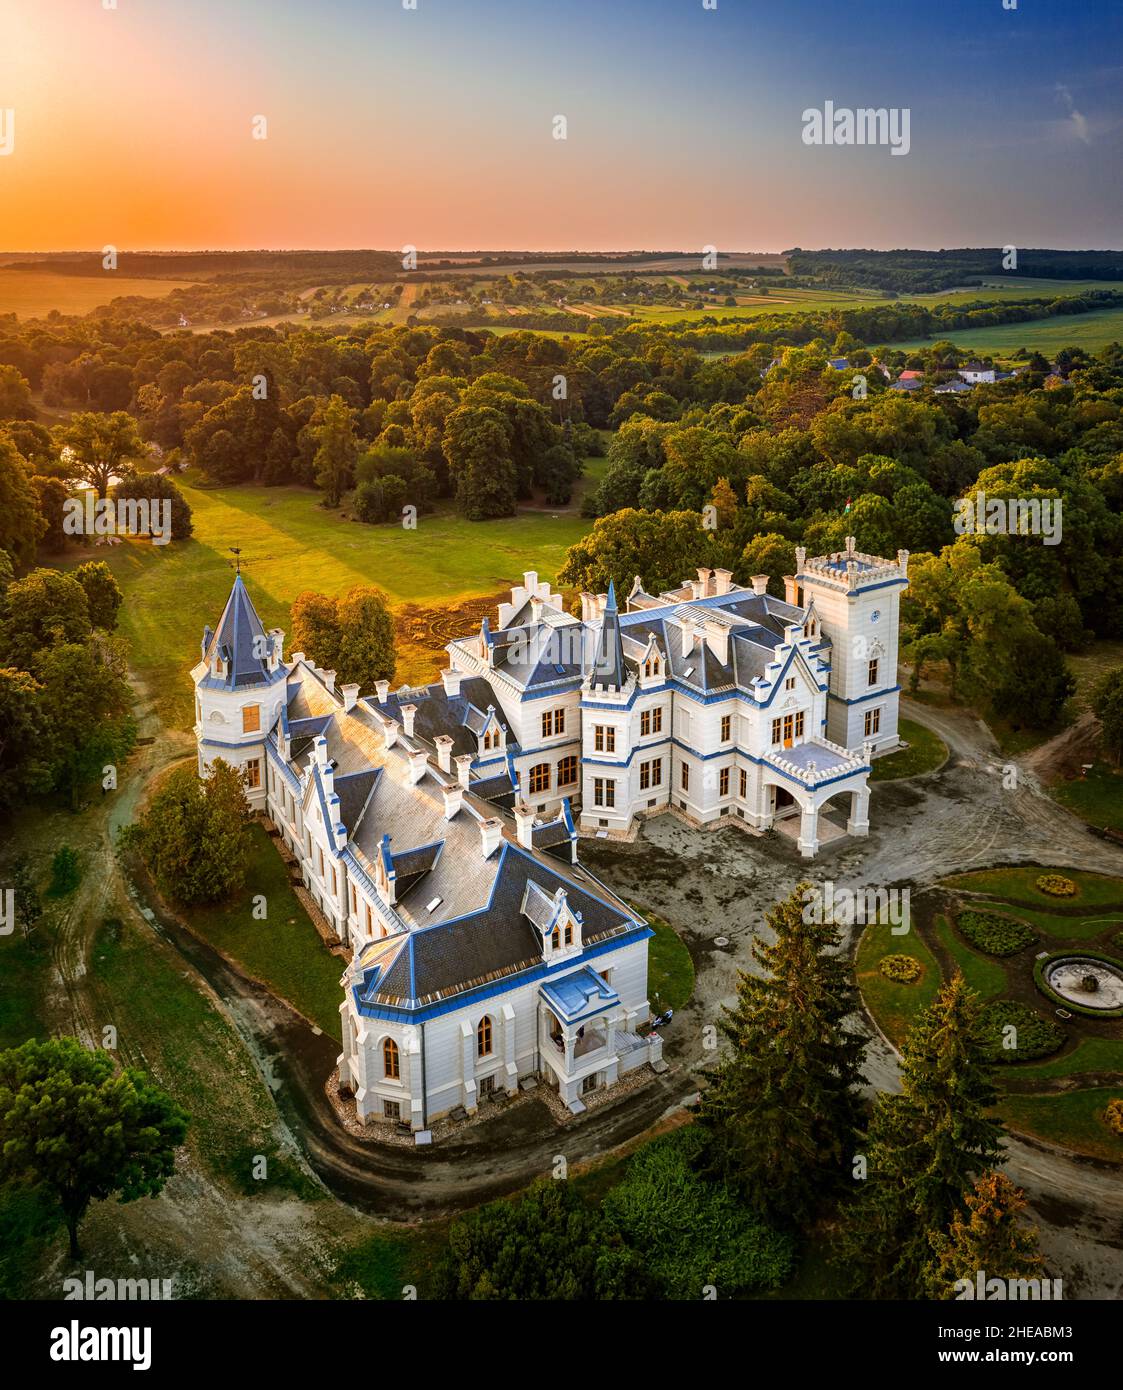 Nadasdladany, Ungarn - Luftaufnahme des schönen renovierten Nadasdy-Herrenhauses (Nadasdy-kastely) in dem kleinen Dorf Nadasdladany mit aufgehender Sonne, Stockfoto